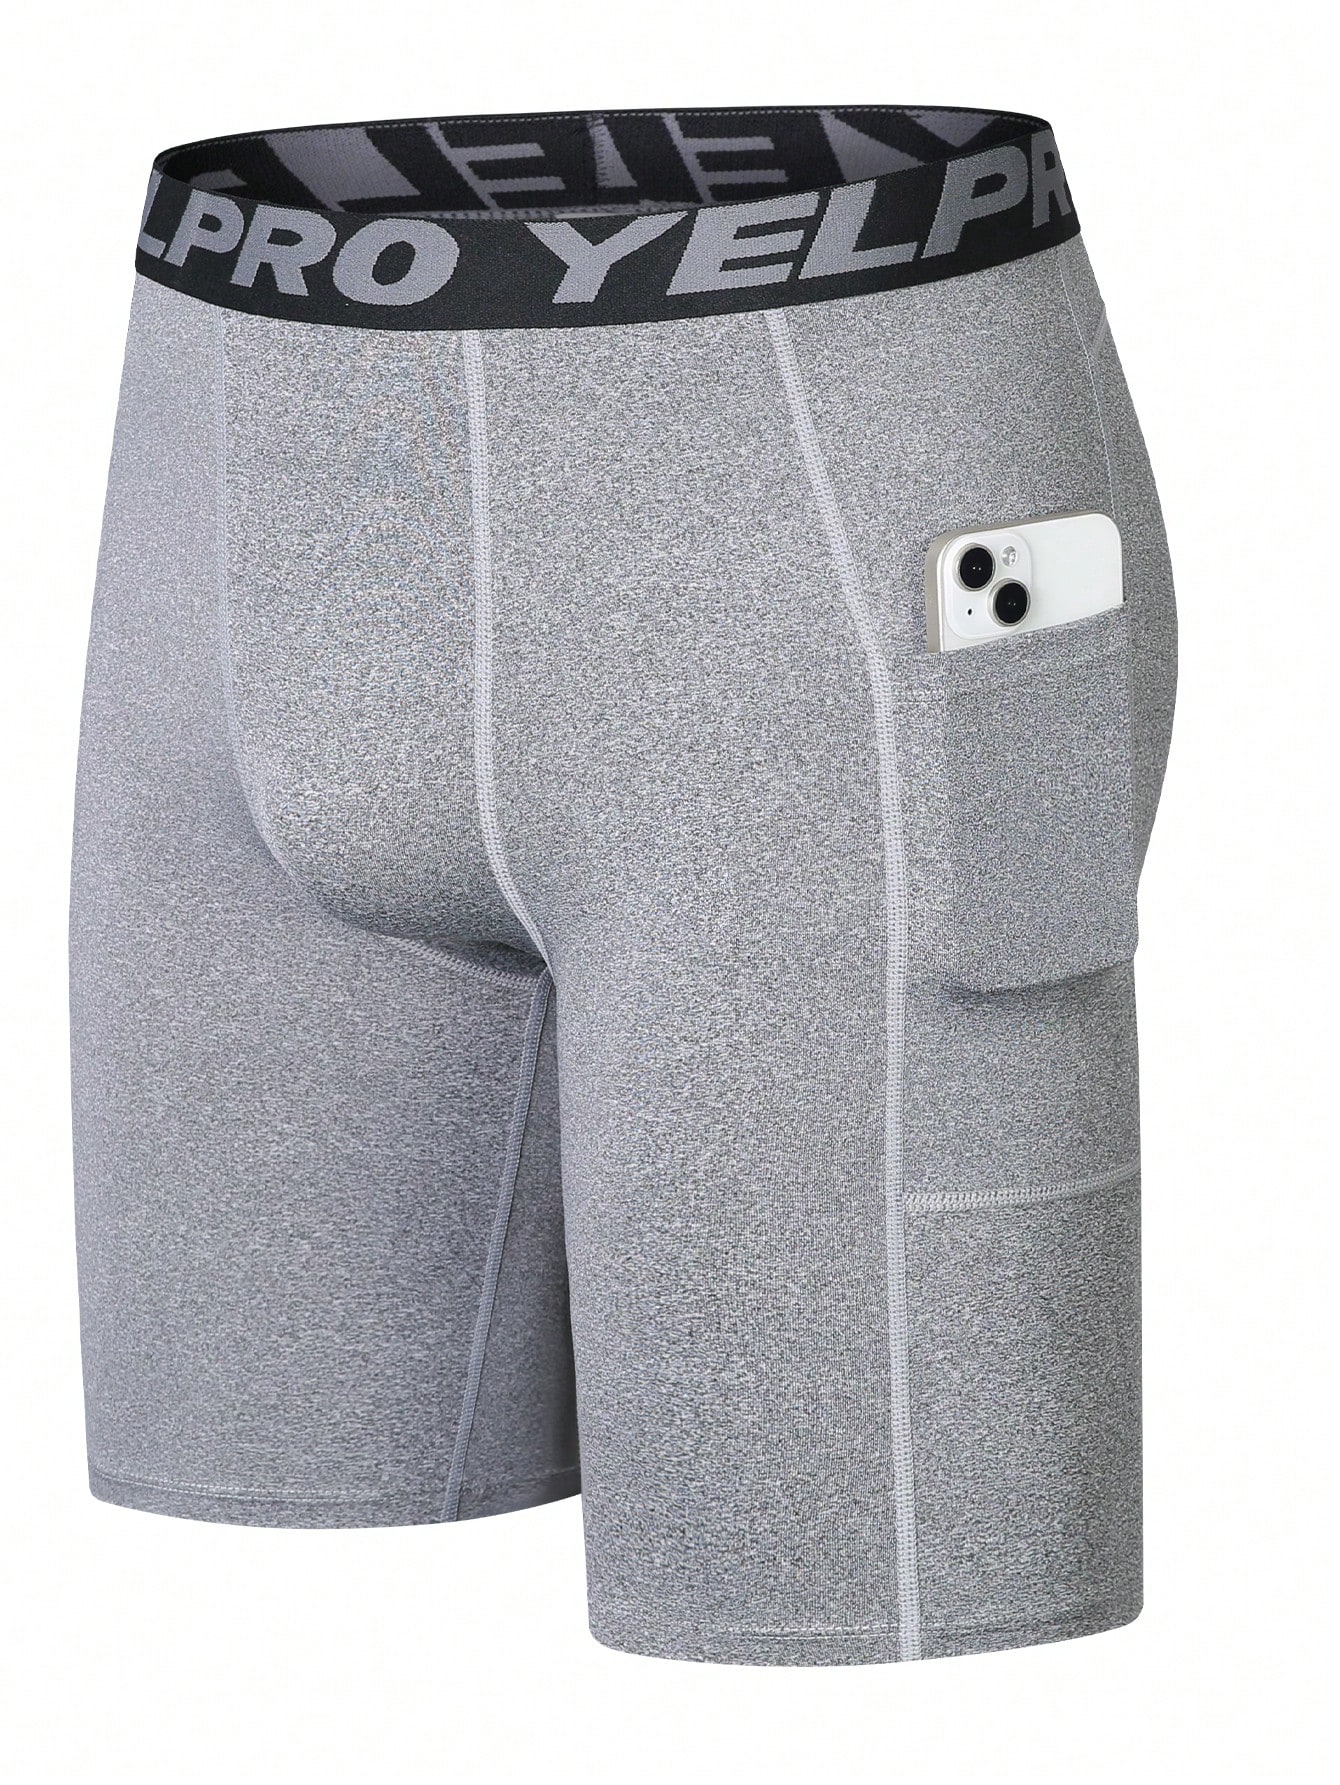 Мужские шорты для фитнеса с лентой с надписью и карманом, серый фотографии